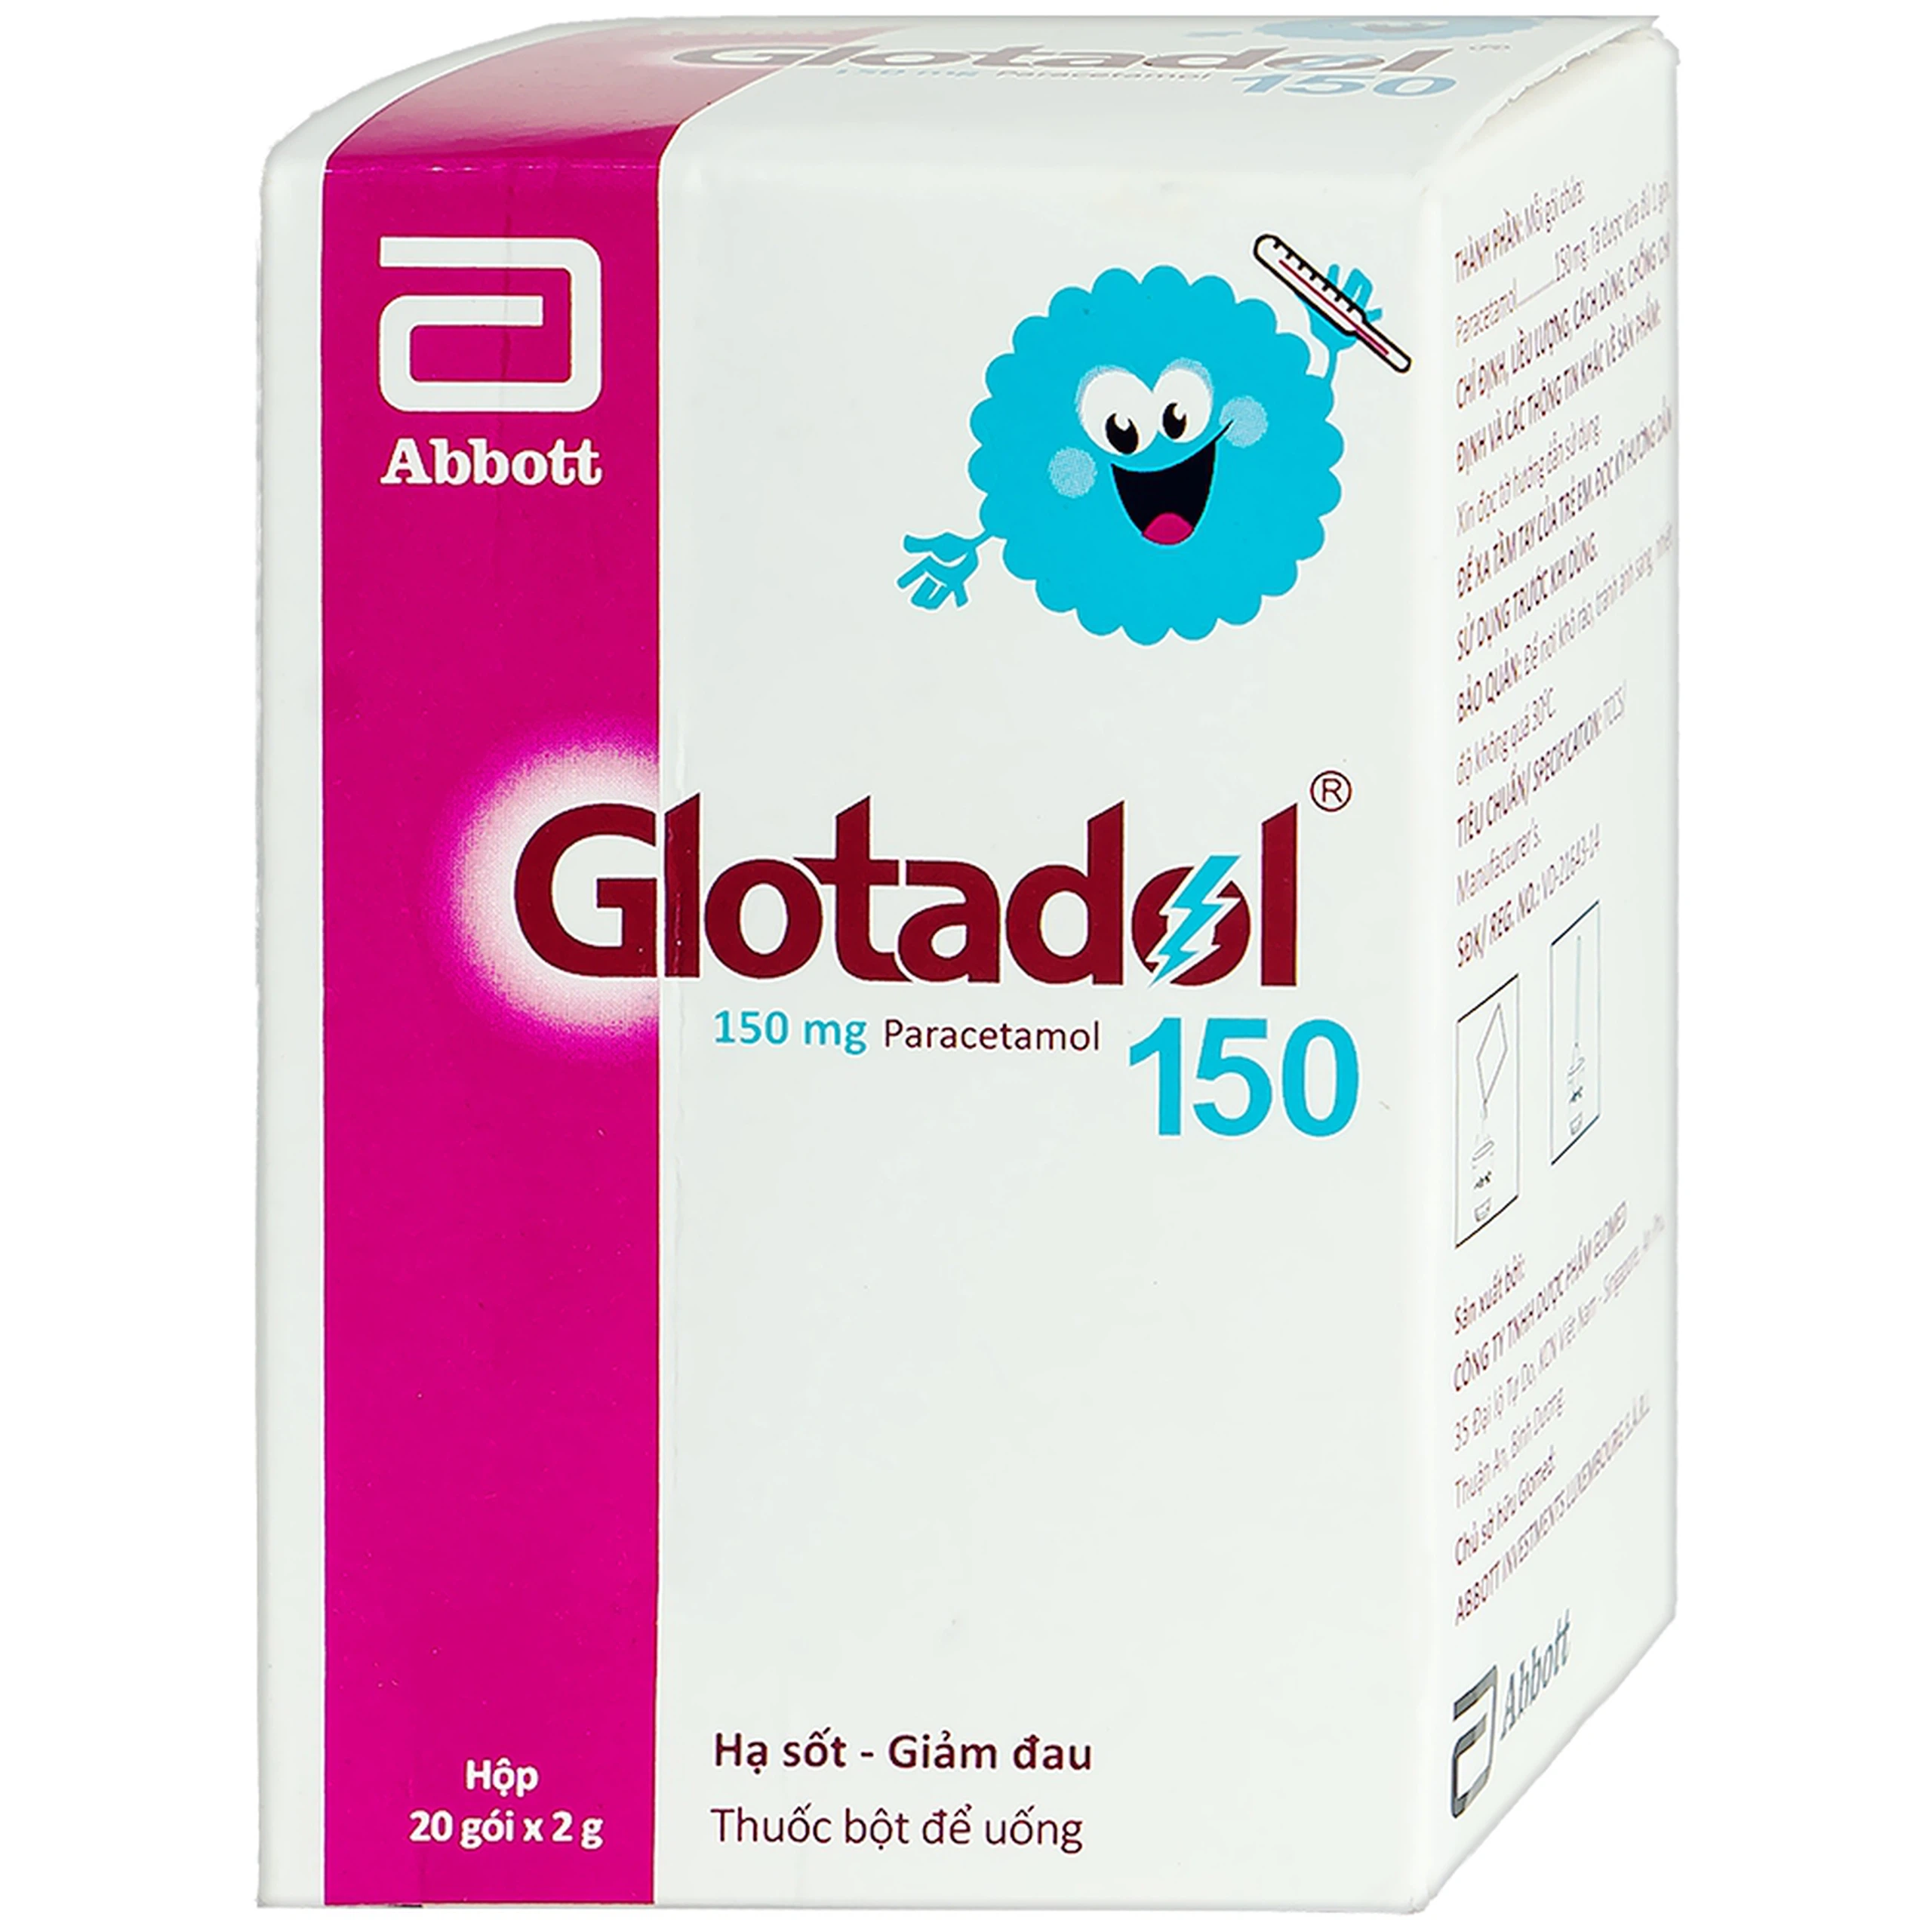 Bột Glotadol 150 Abbott hỗ trợ hạ sốt và giảm các cơn đau do cảm cúm (20 gói x 2g)